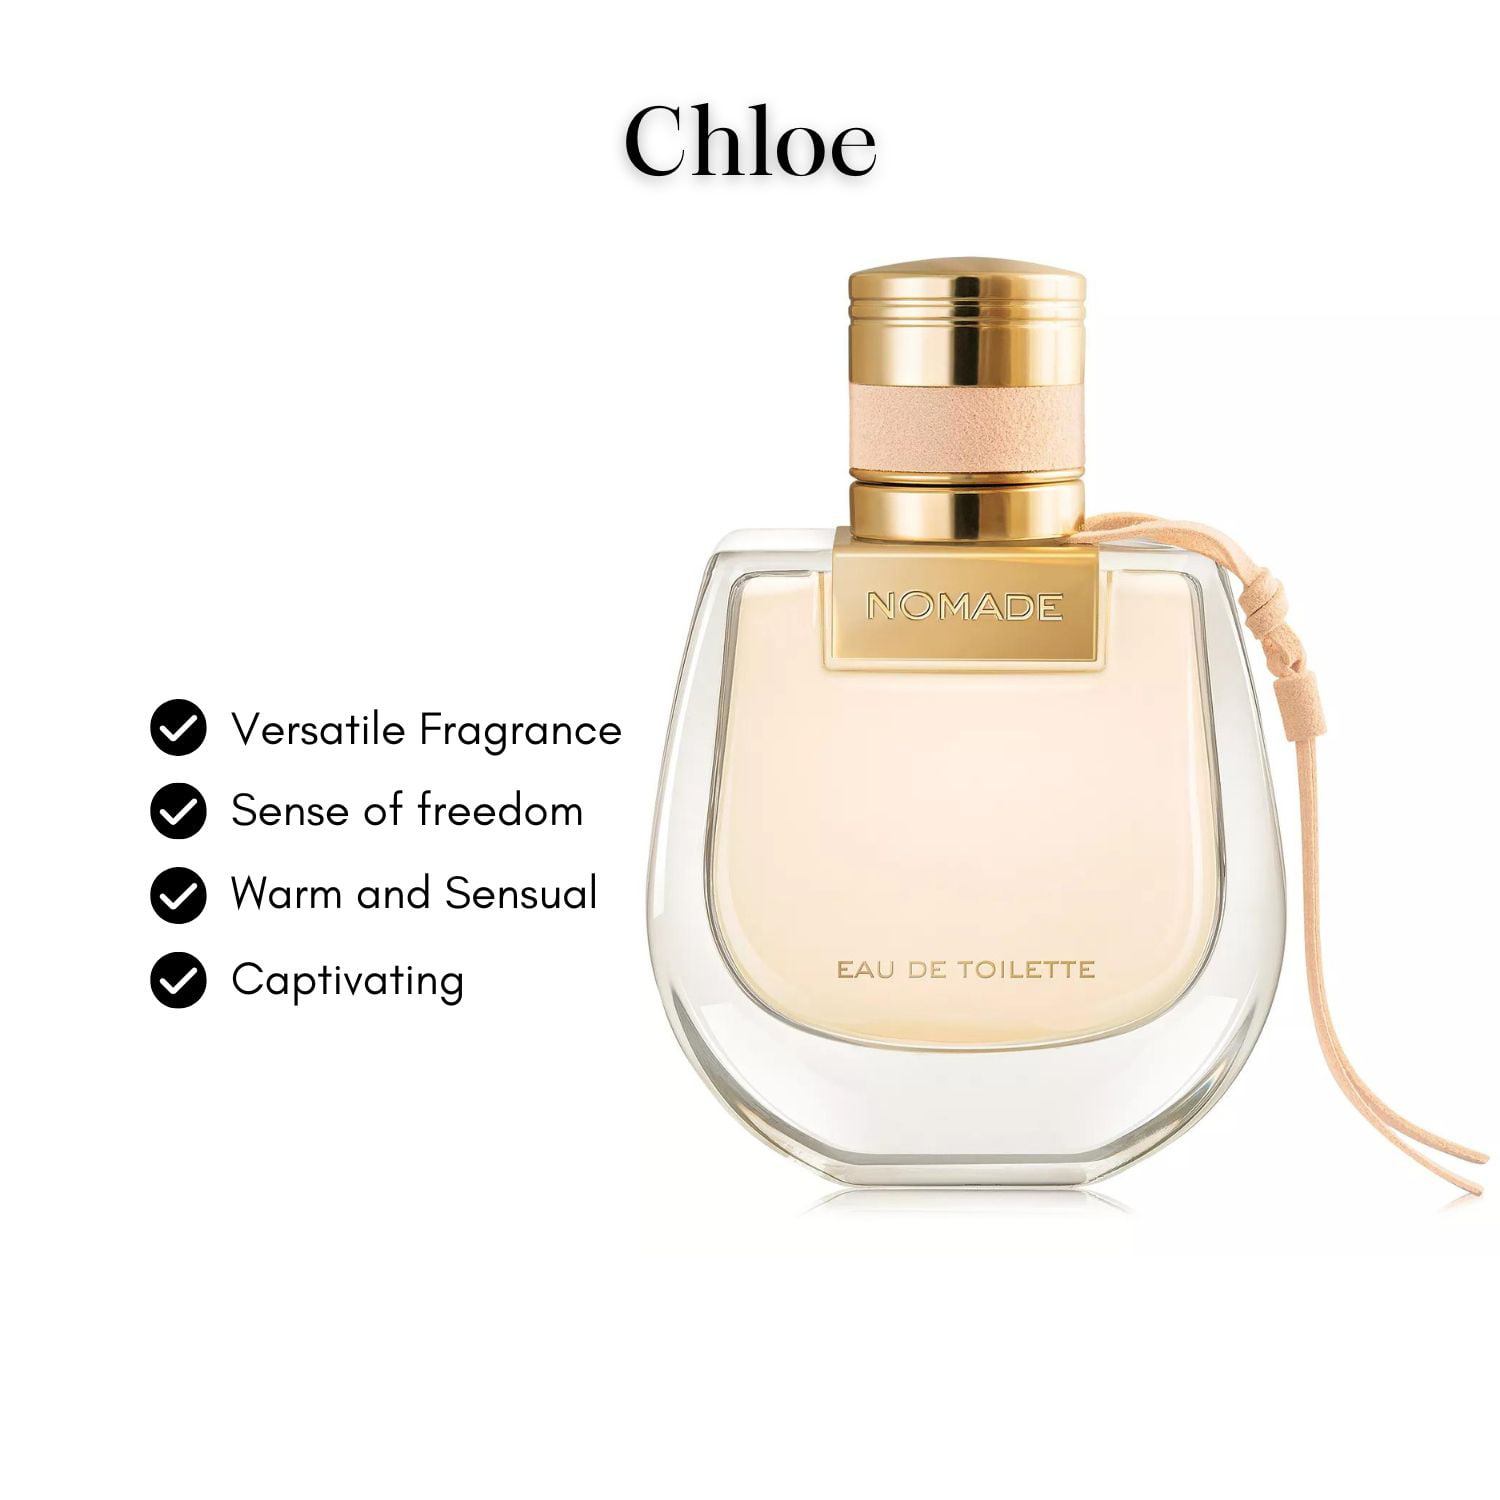 Chloé Nomade Naturelle Eau de Parfum ~ New Fragrances